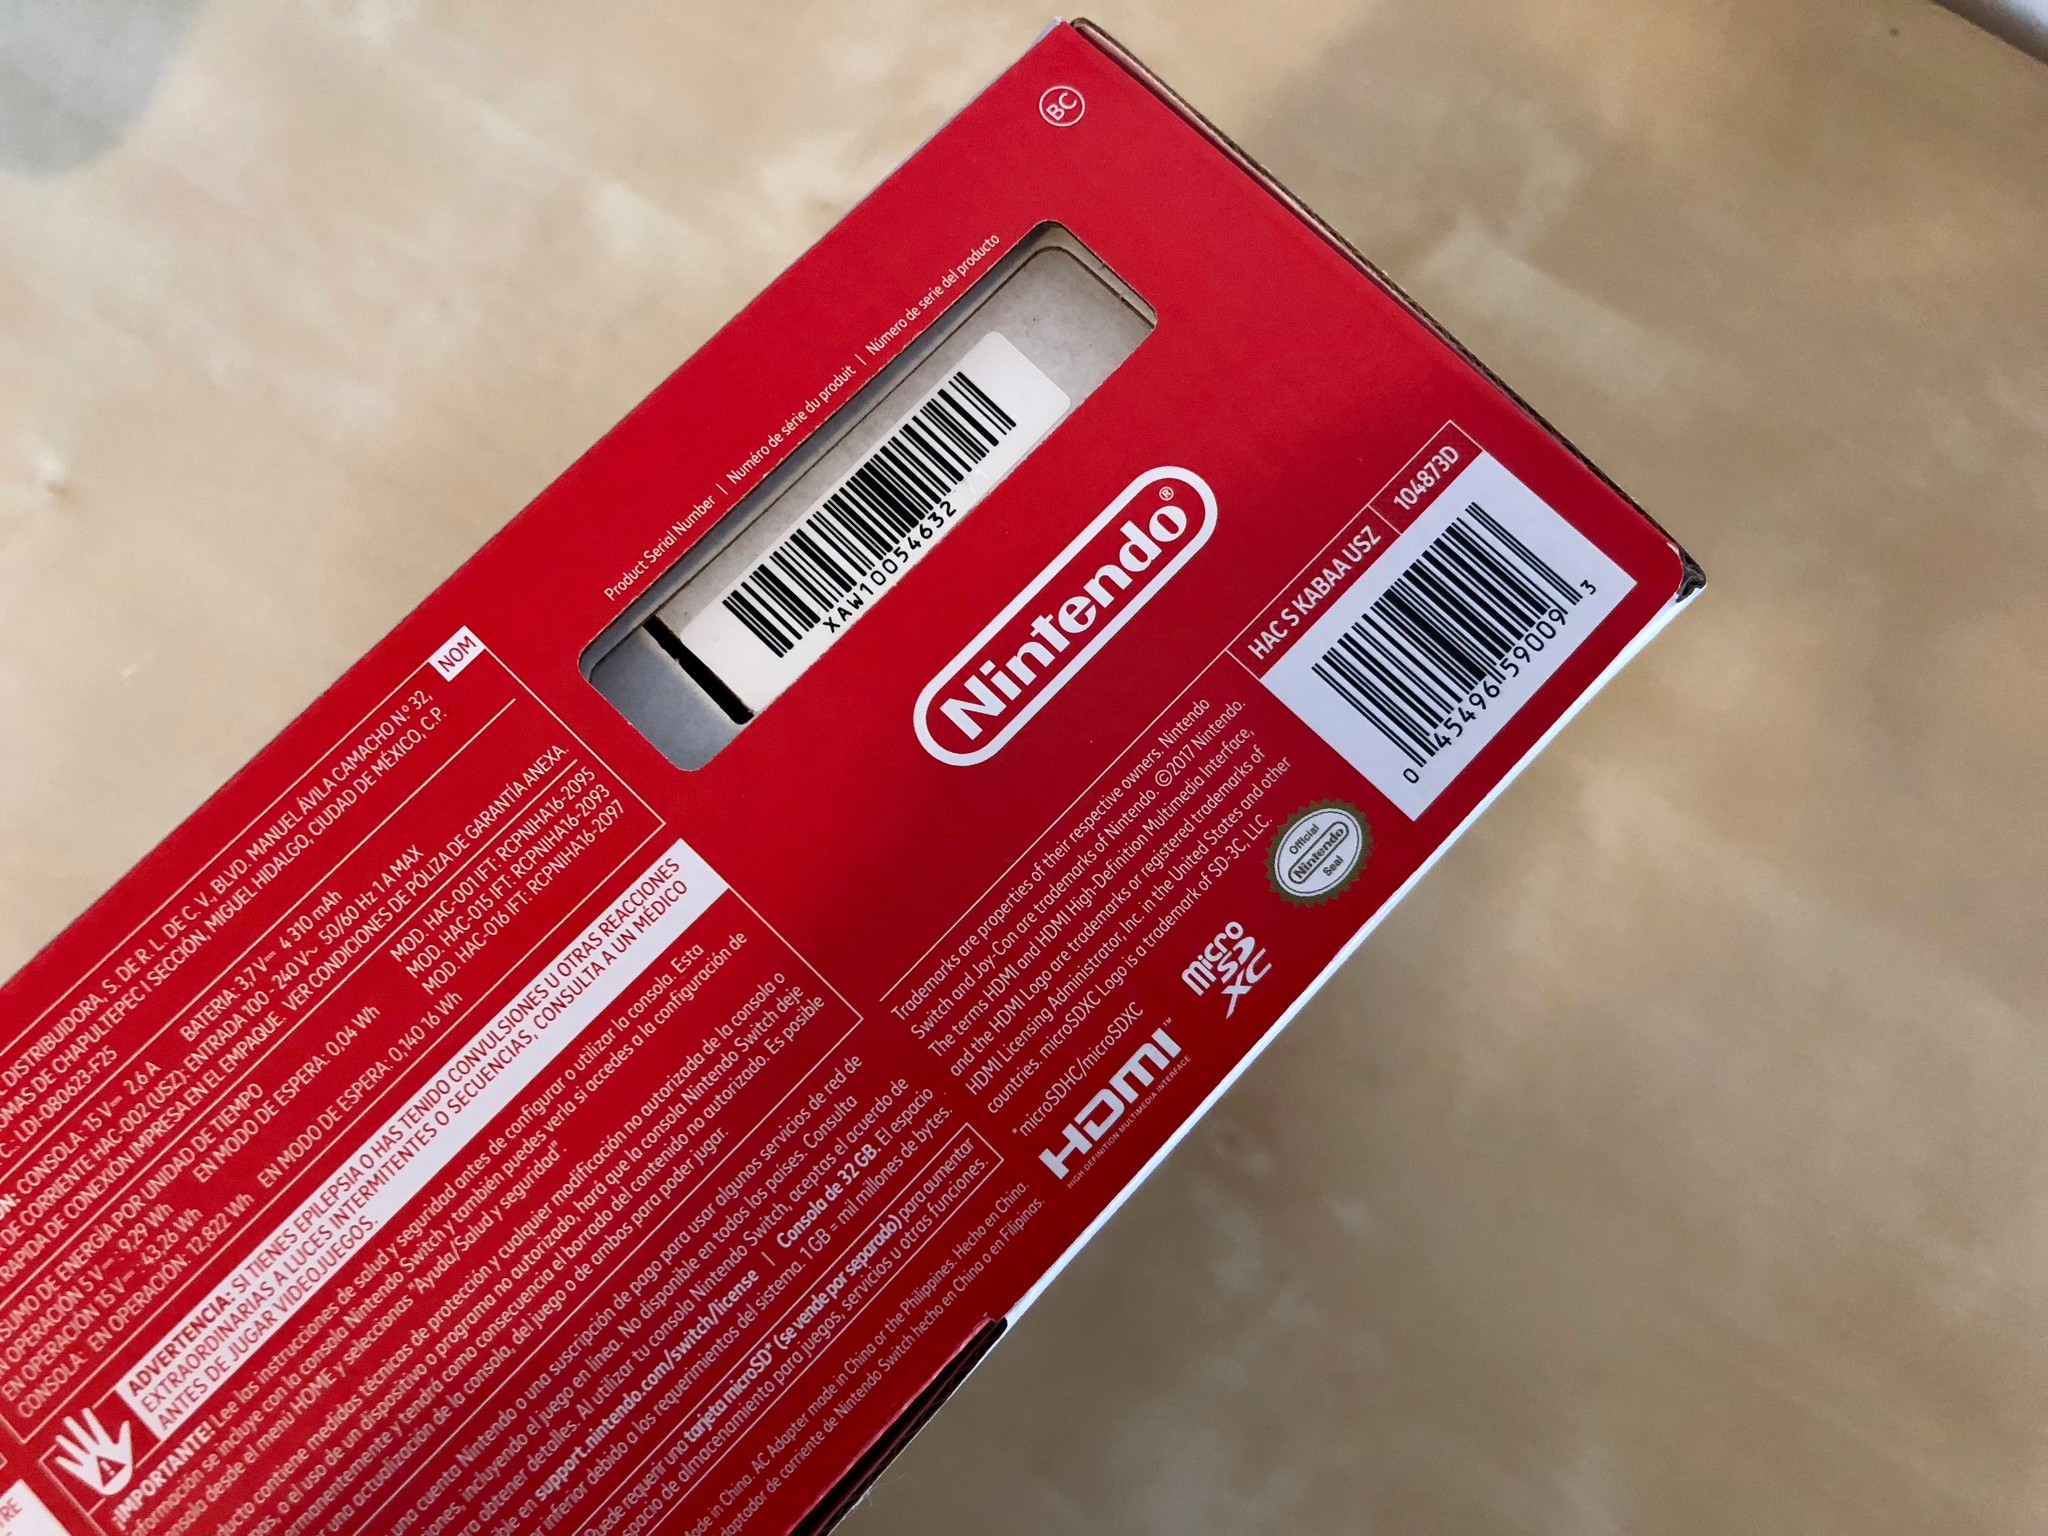 Номер nintendo. Серийный номер Nintendo Switch. Nintendo Switch Lite серийный номер. Серийник Нинтендо свитч. Серийный номер на коробке Нинтендо.